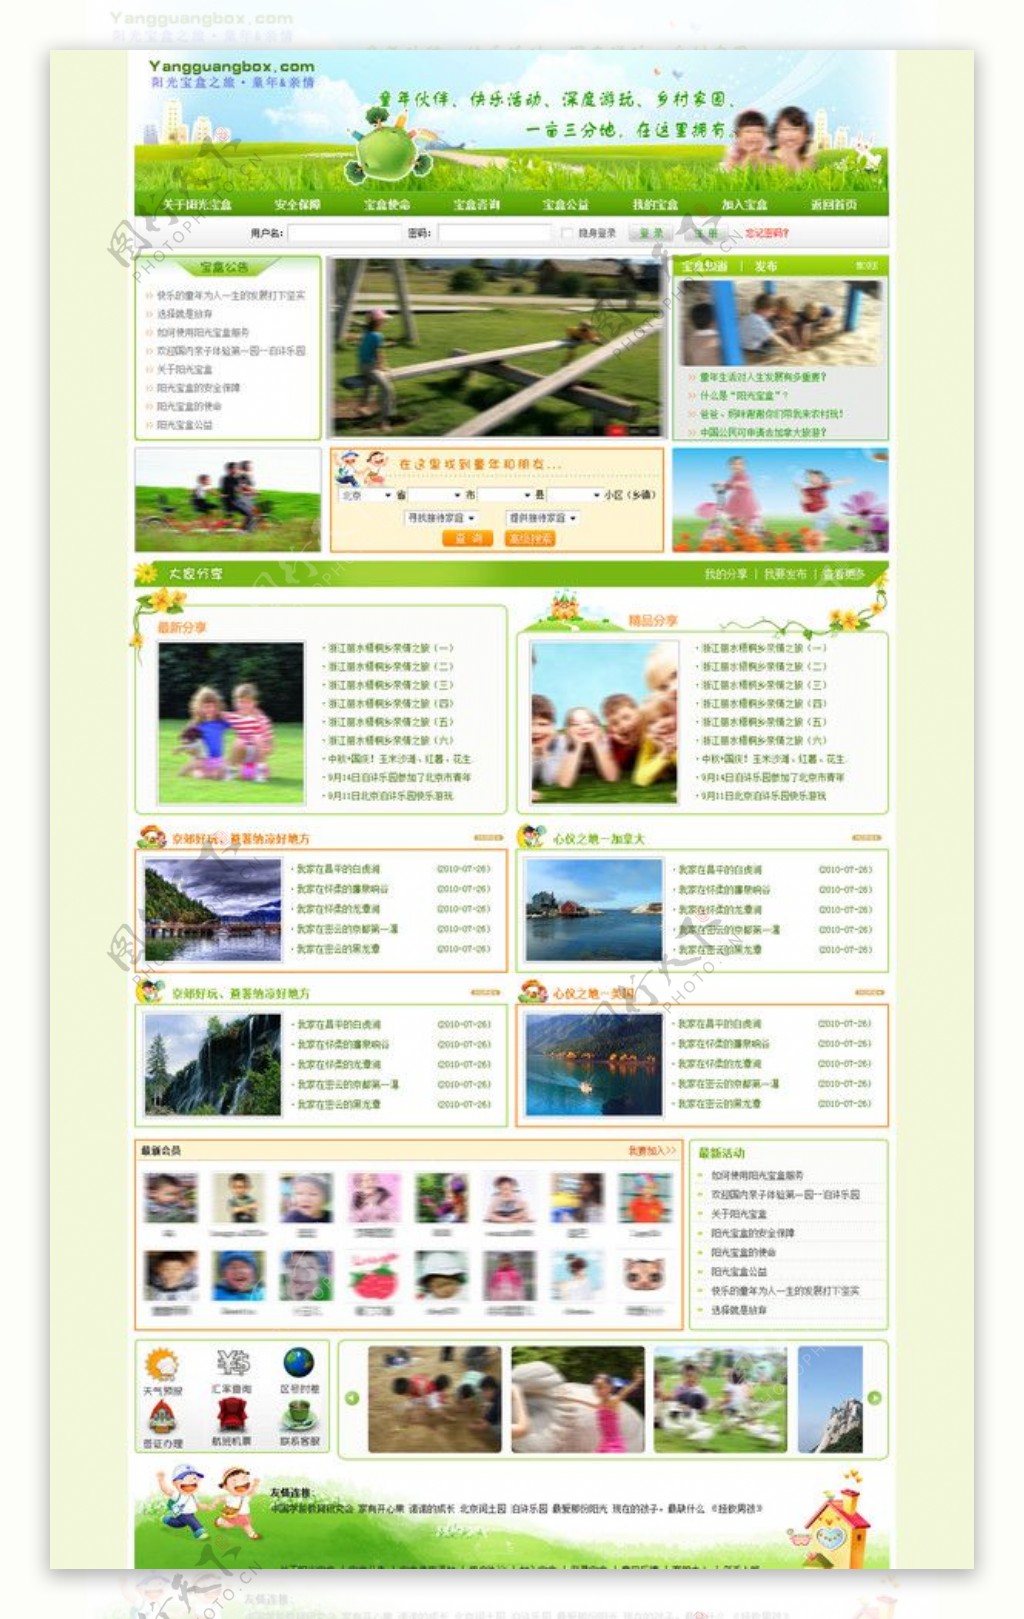 阳光宝盒旅游网站图片